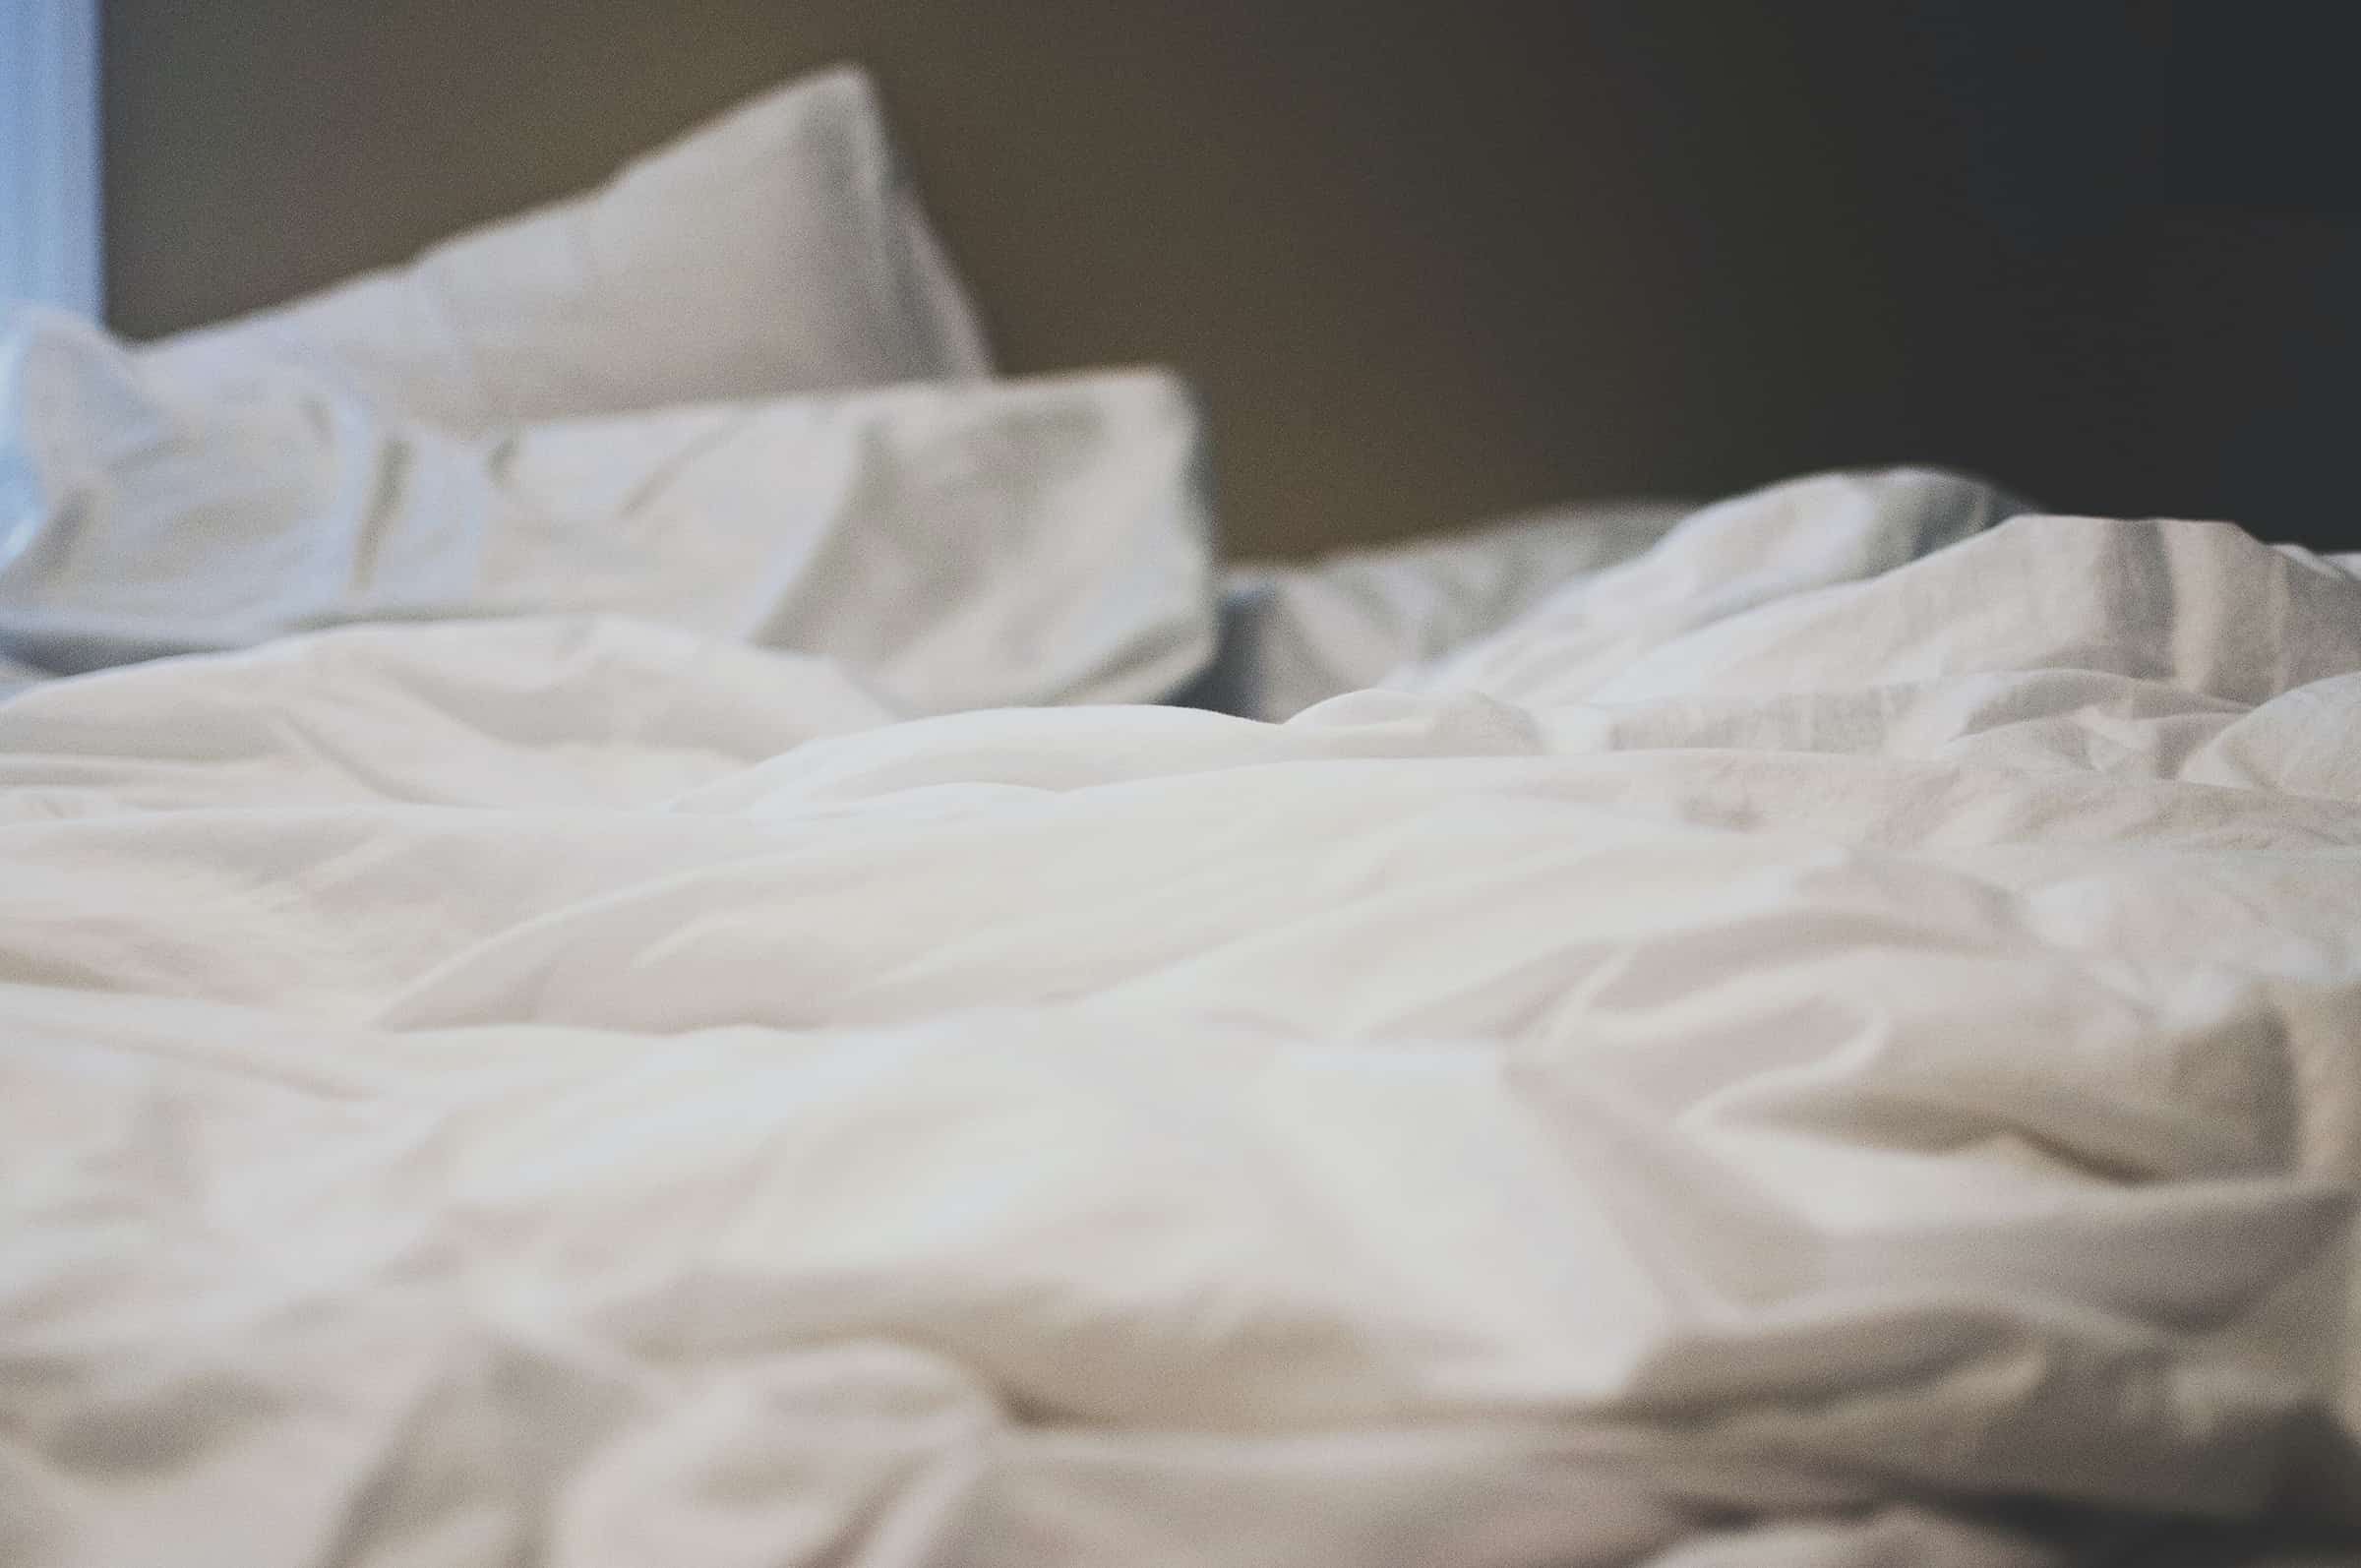 Ruffled bed sheets